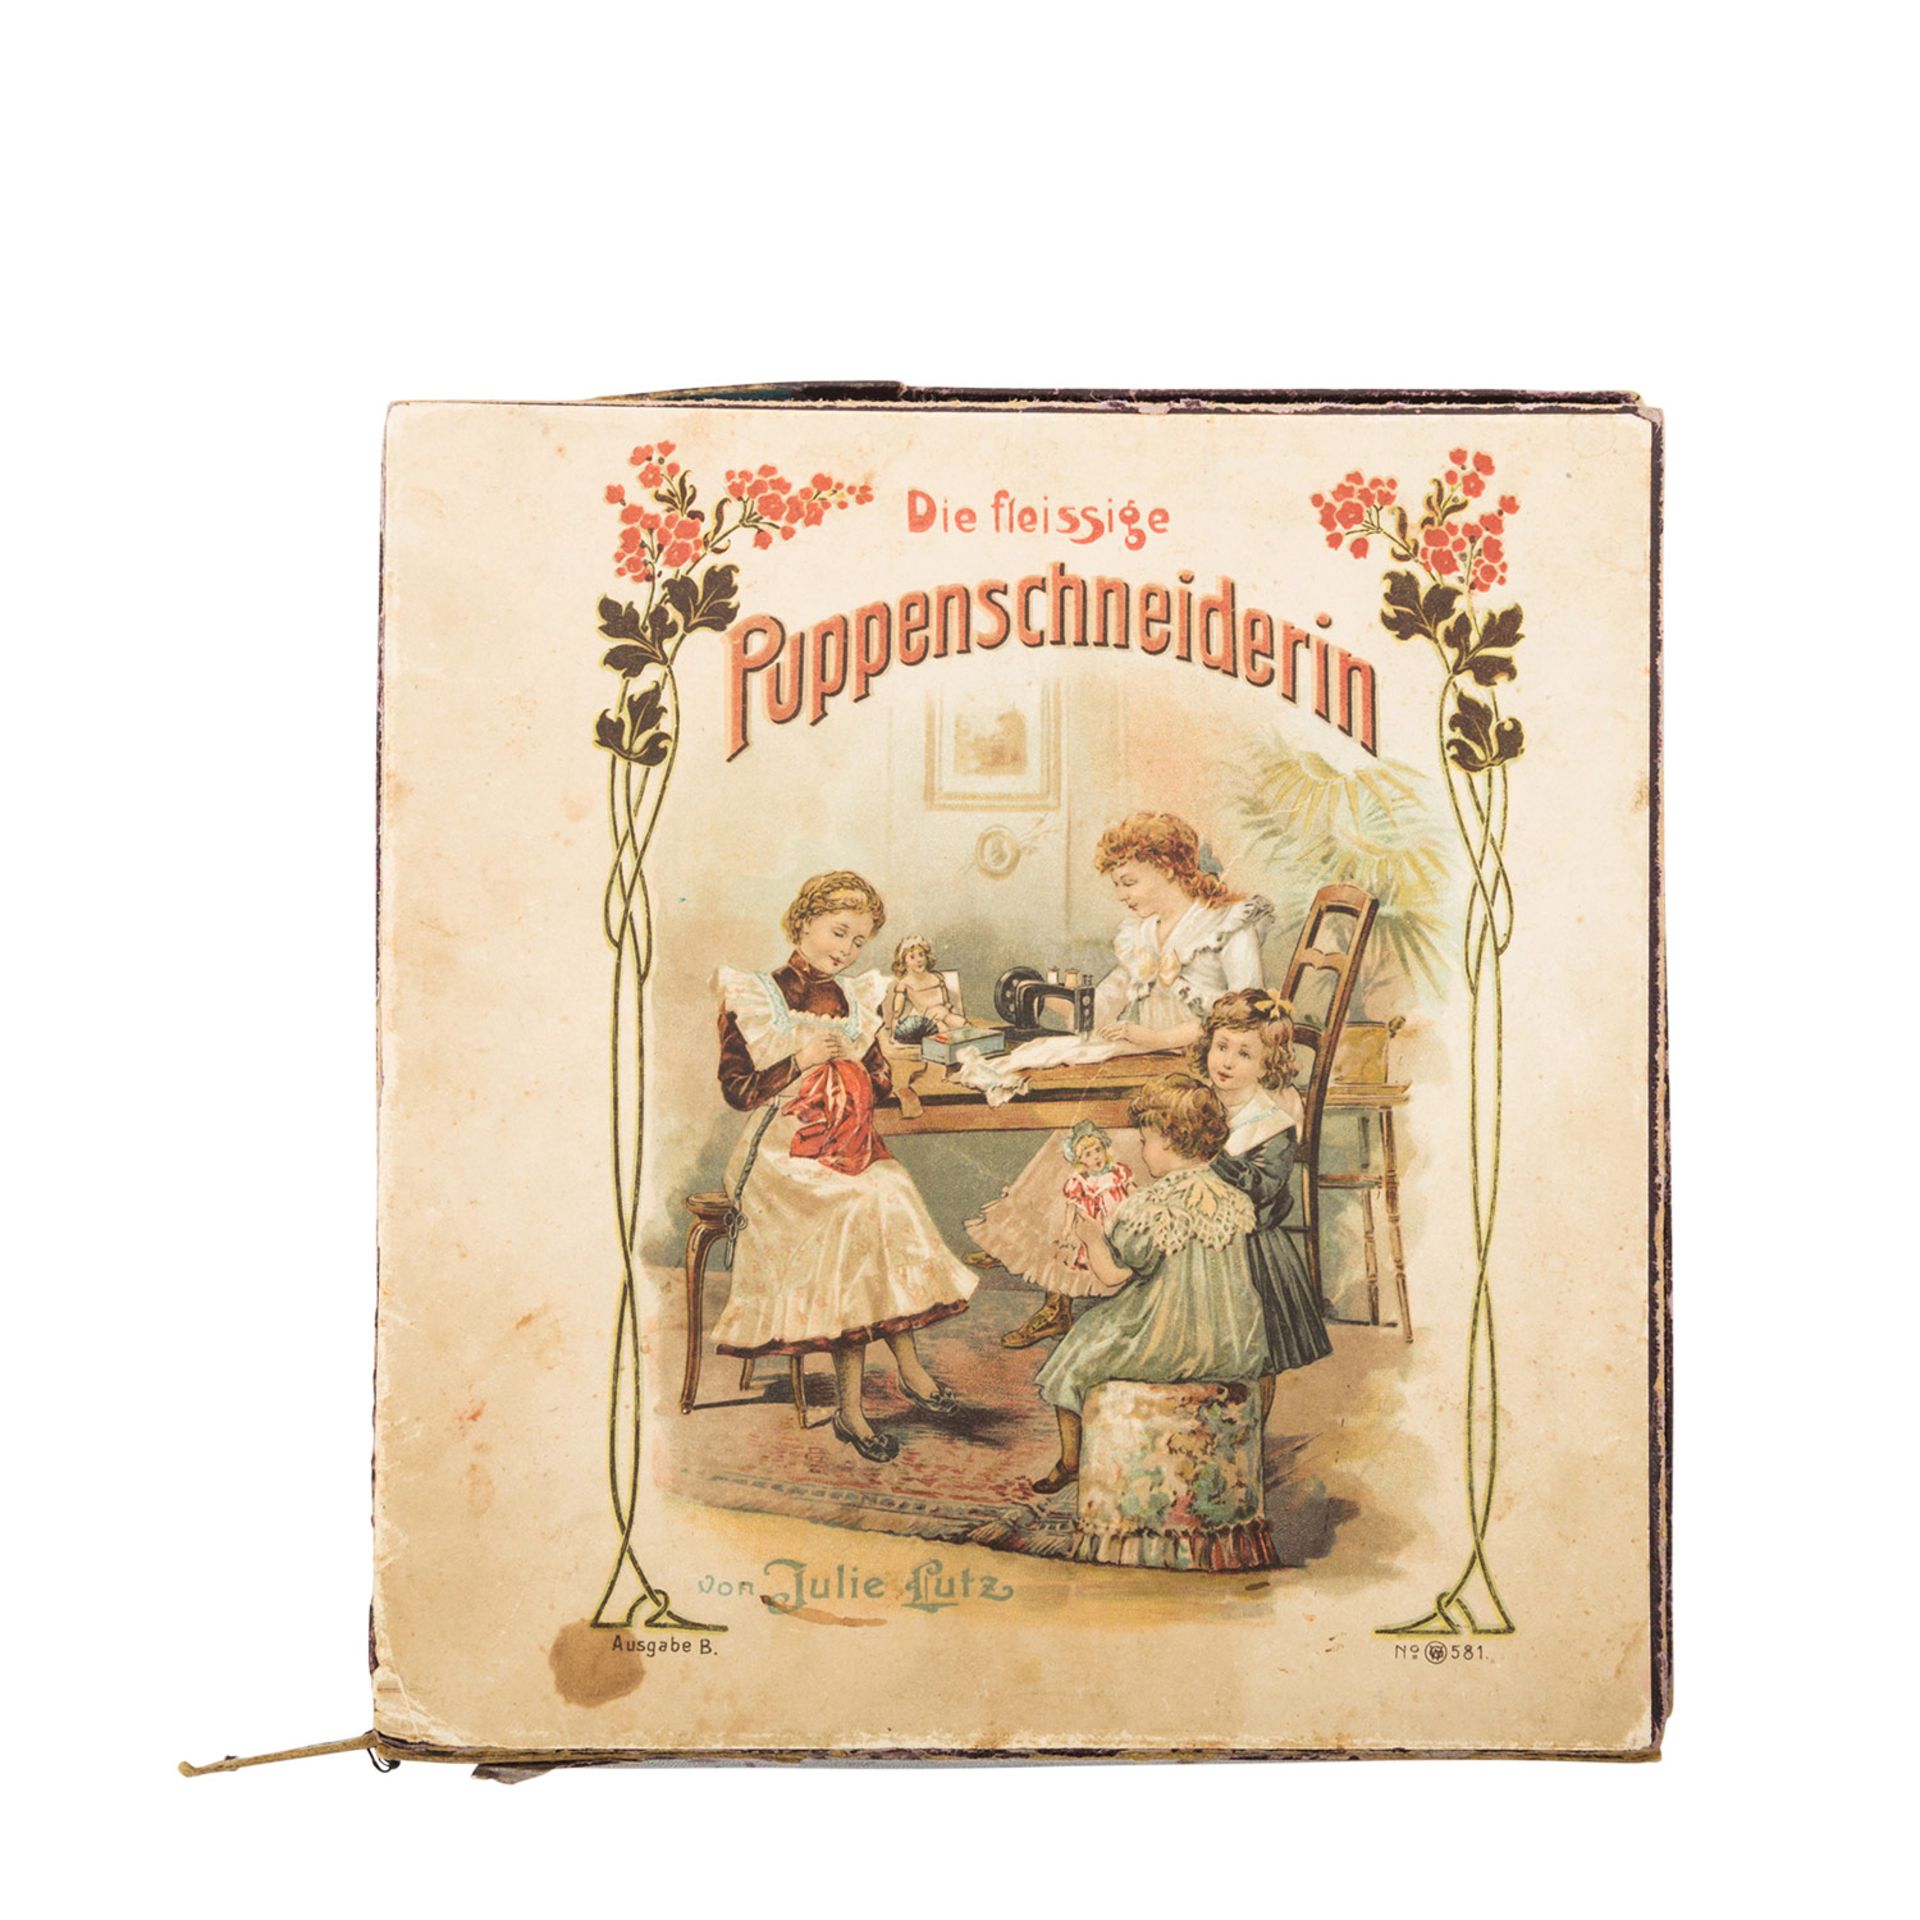 JULIE LUTZ "Die fleissige Puppenschneiderin" Ausgabe B Nr. 581, um 1900, Biskuitporzellankopf- - Bild 5 aus 8